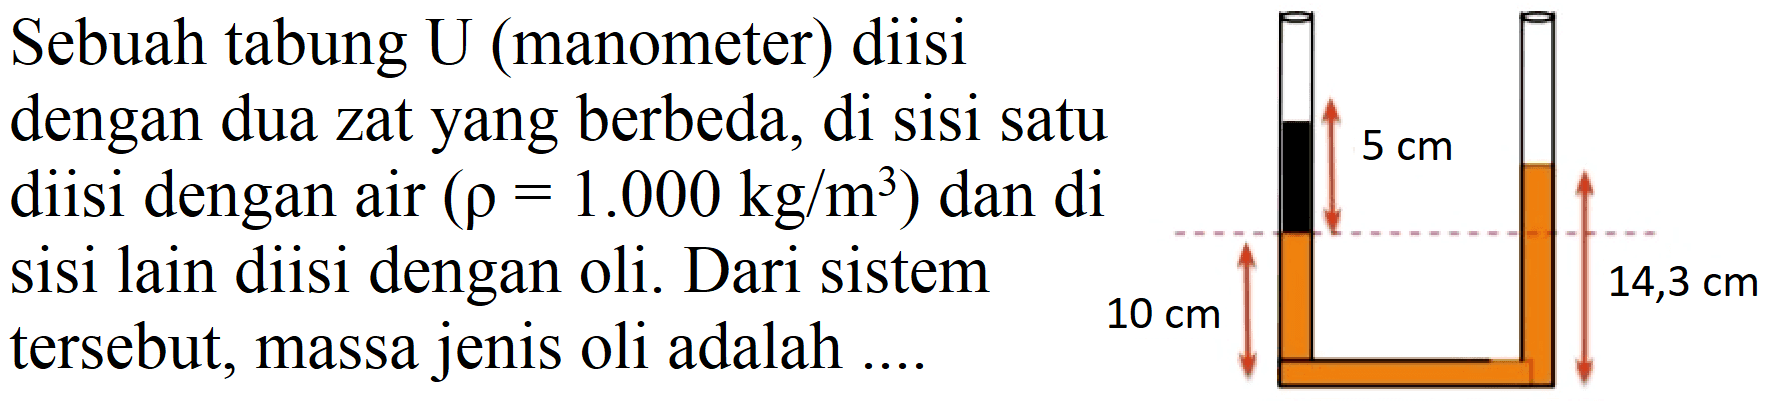 Sebuah tabung  U  (manometer) diisi
dengan dua zat yang berbeda, di sisi satu
diisi dengan air  (rho=1.000 kg / m^(3))  dan di
sisi lain diisi dengan oli. Dari sistem
tersebut, massa jenis oli adalah  ... . 